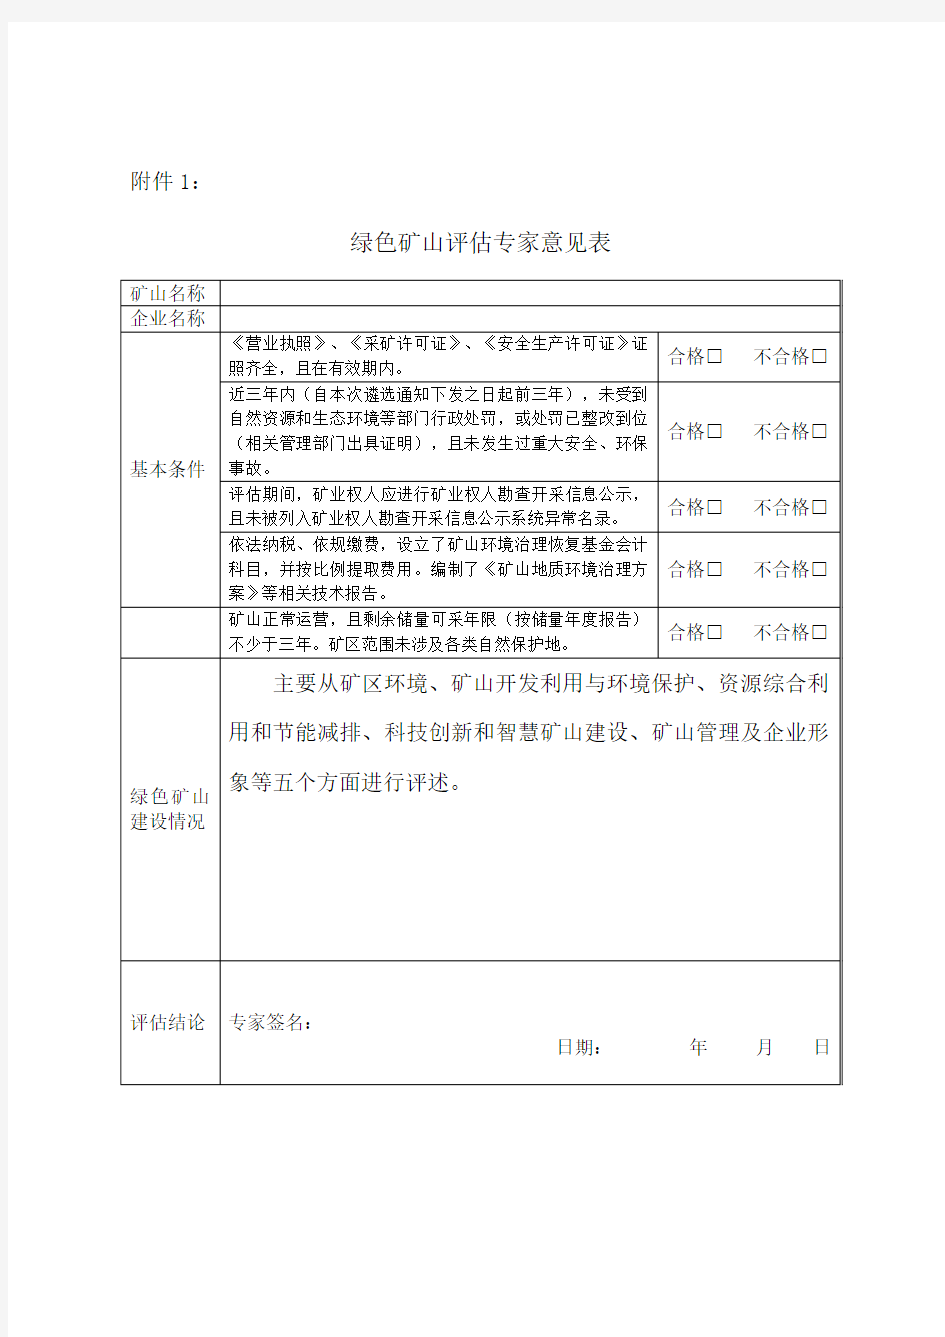 内蒙古绿色矿山评估专家意见表、承诺书、第三方评估报告(参考模板)